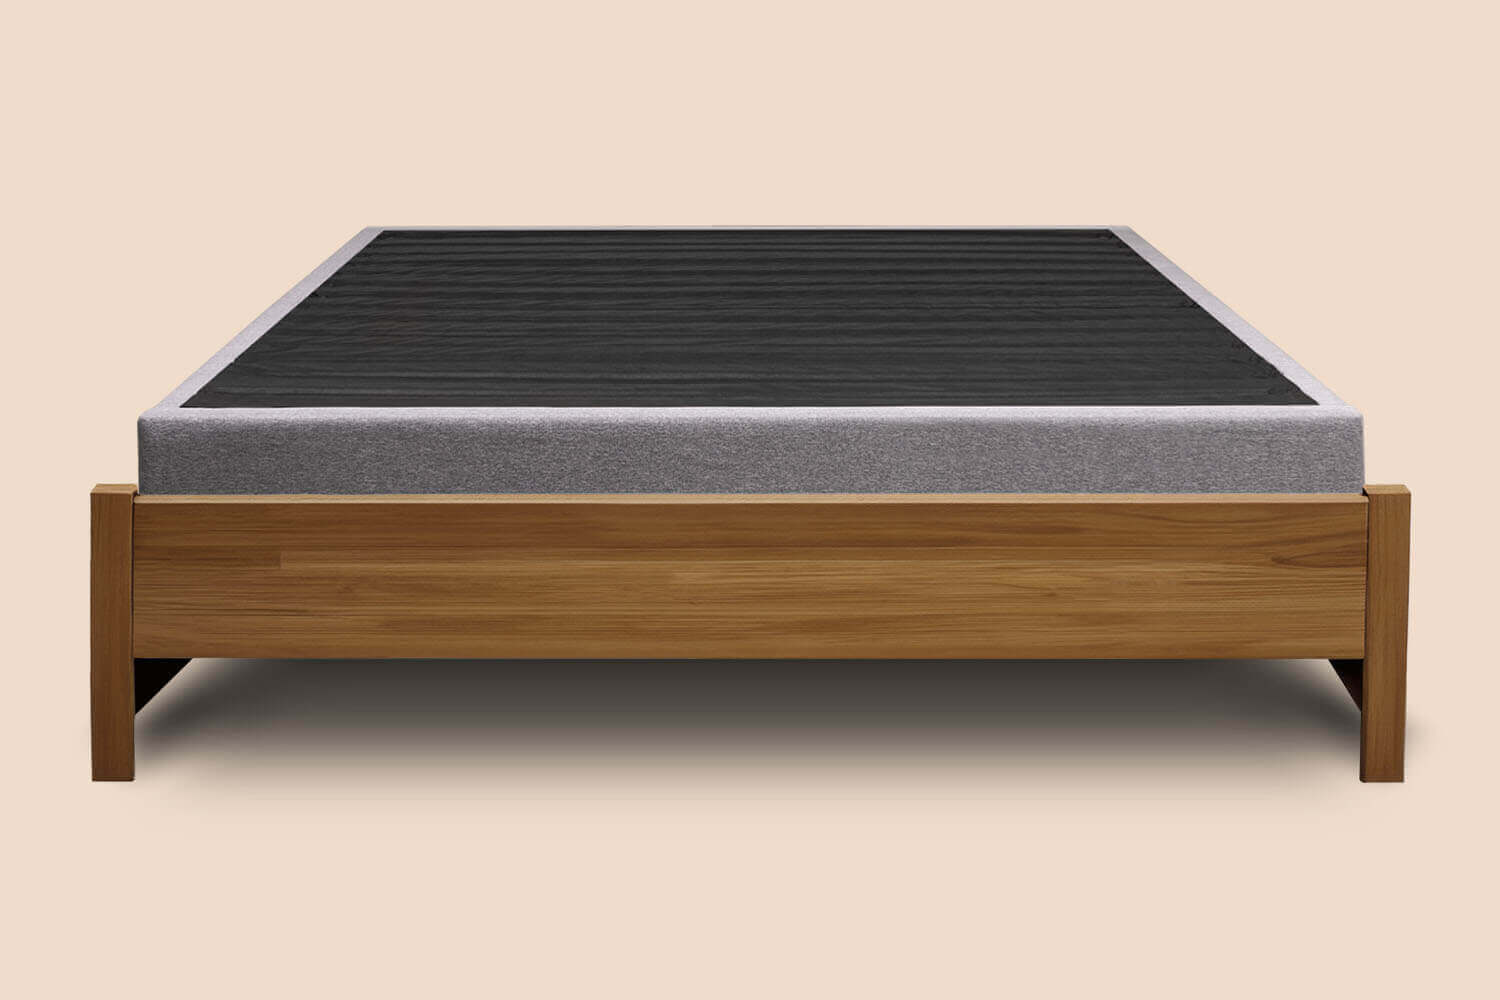 Platform Bed foundation in a decorative wood bed frame